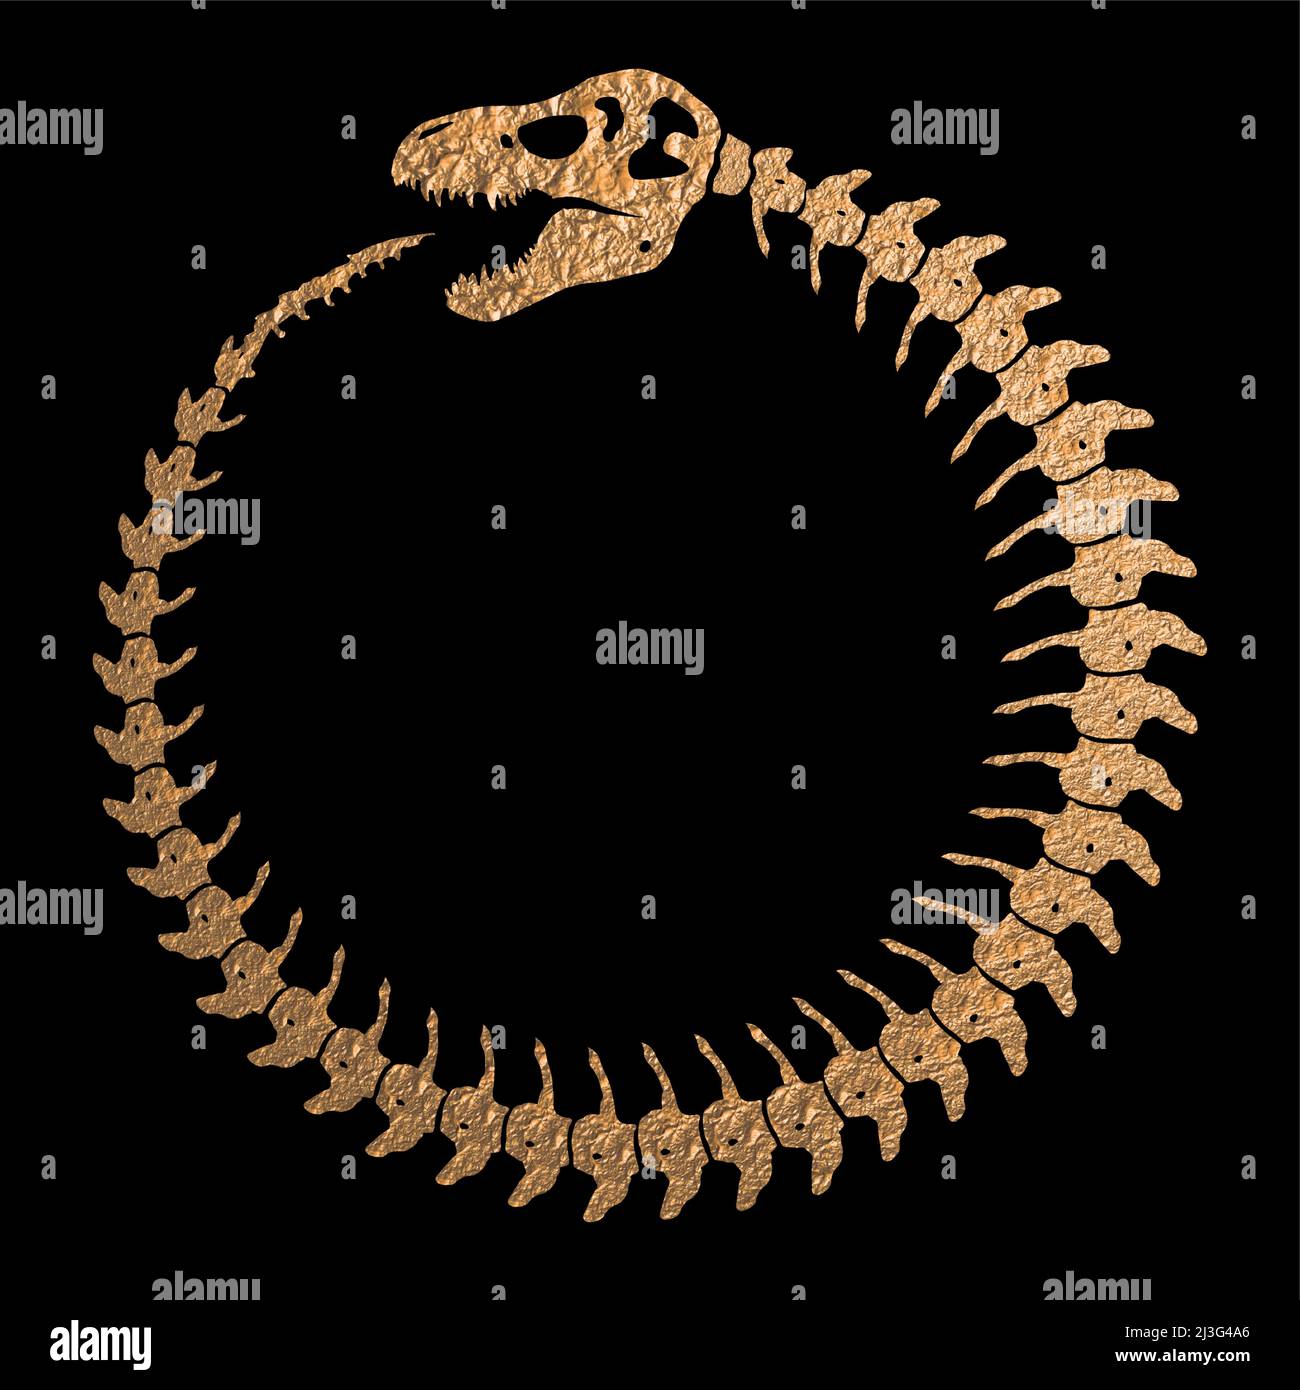 Squelette de dinosaure comme symbole Ouroboros Infinity - texture d'or brut Illustration de Vecteur